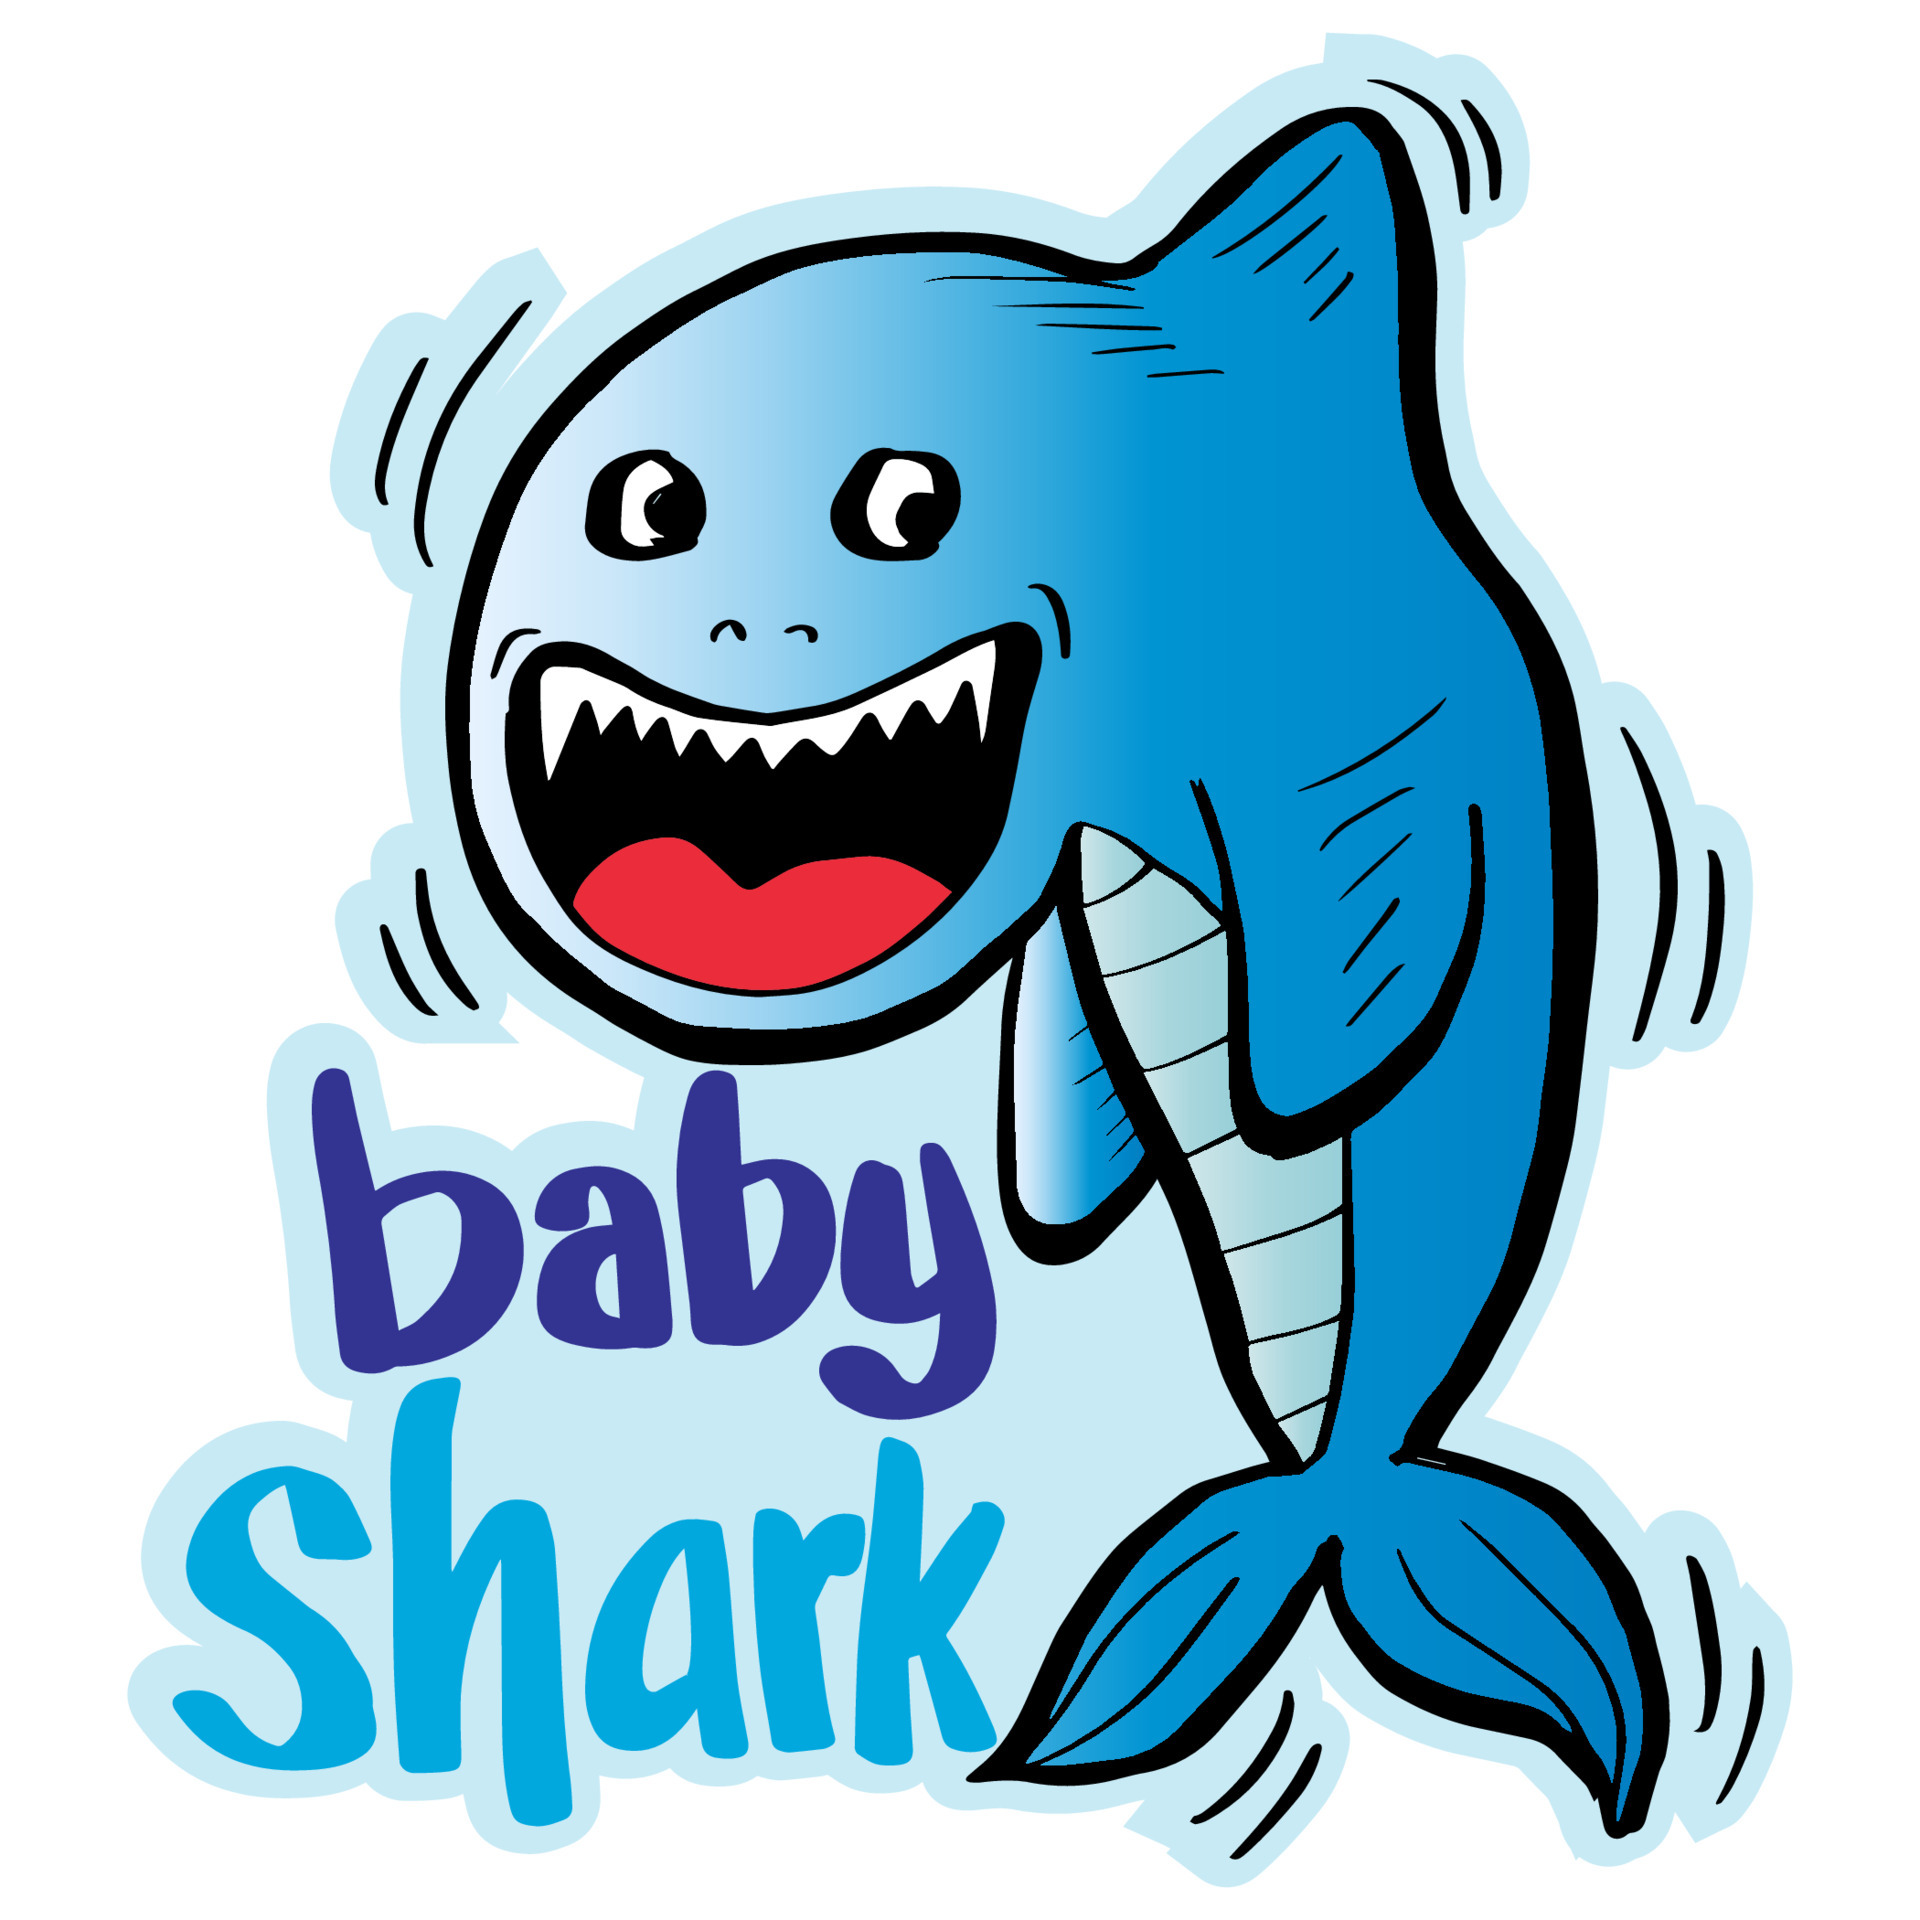 Cartoon cute baby shark. Design for t - shirt. 6153257 Vector Art at  Vecteezy